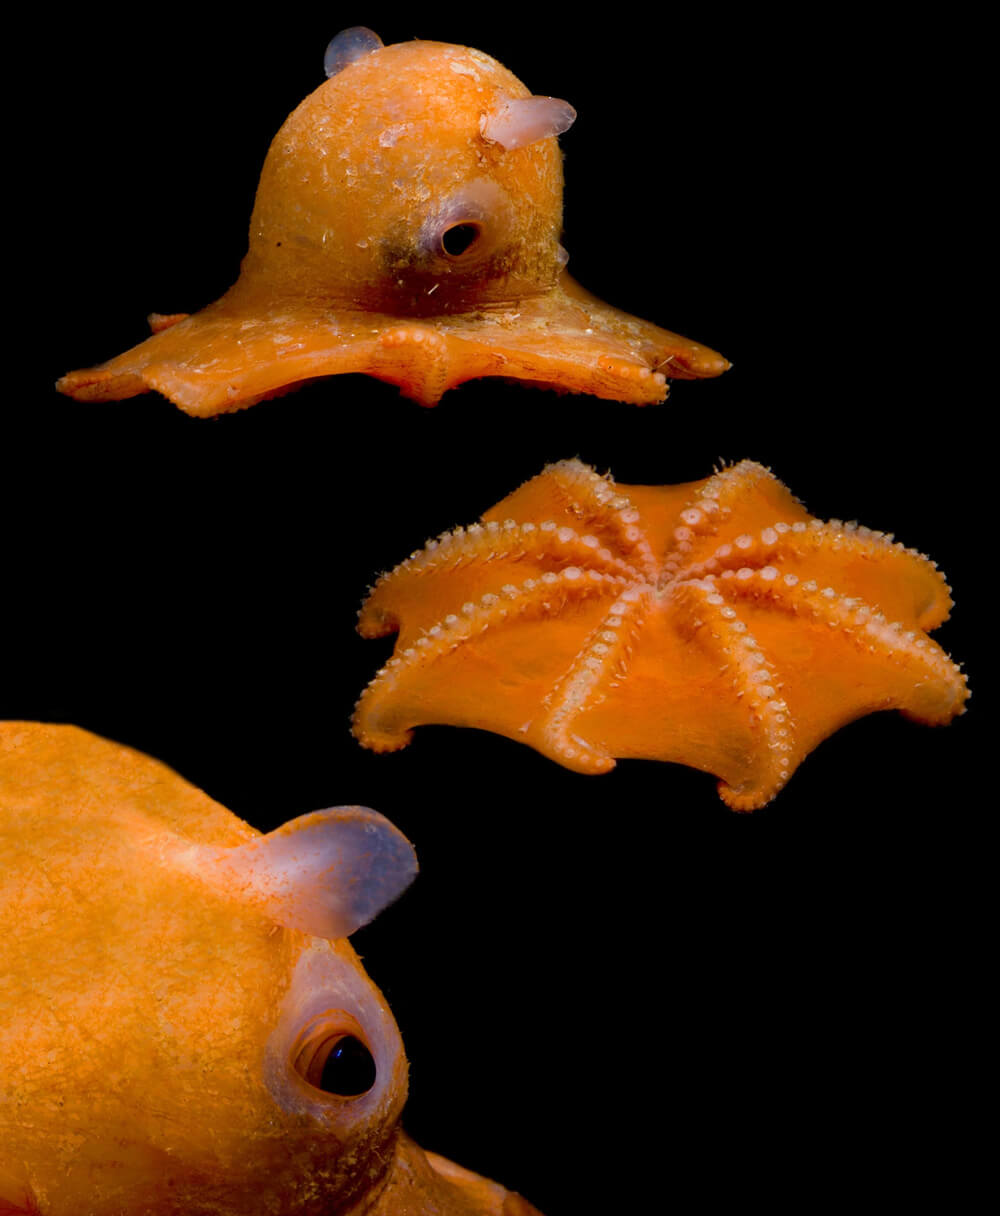 ilginç deniz canlısı - dumbo ahtapotu